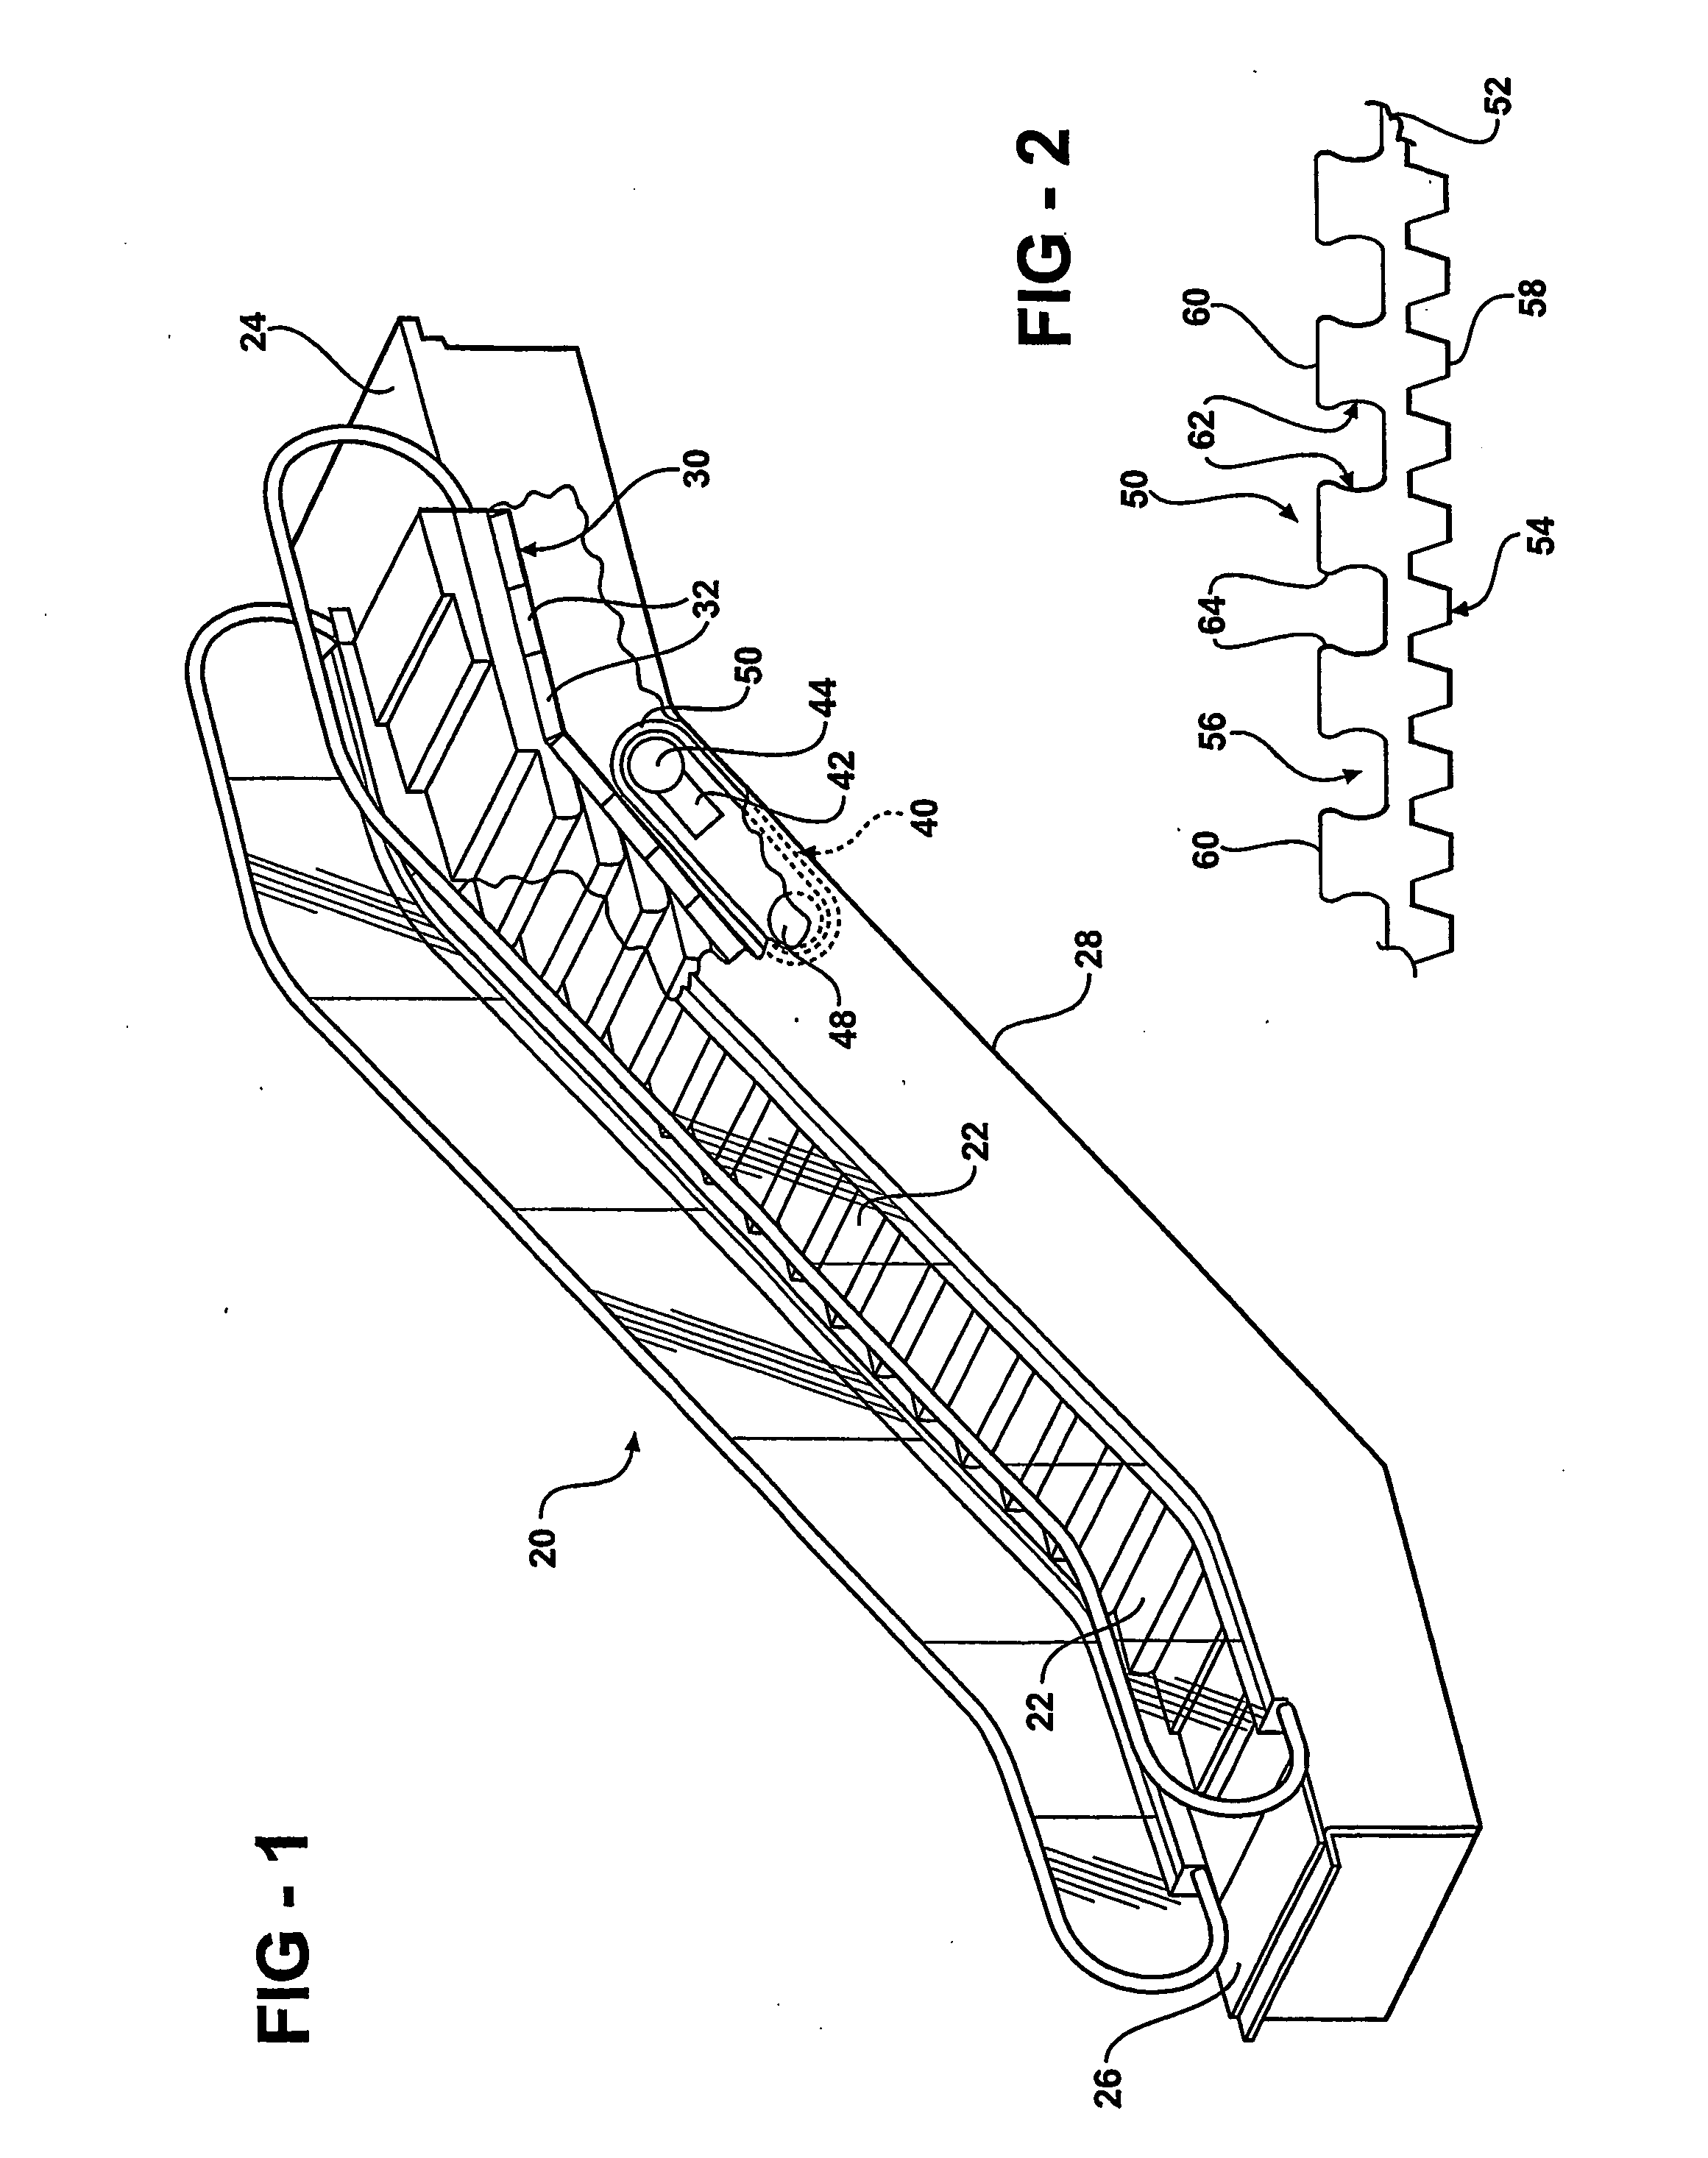 Drive belt for a passenger conveyor